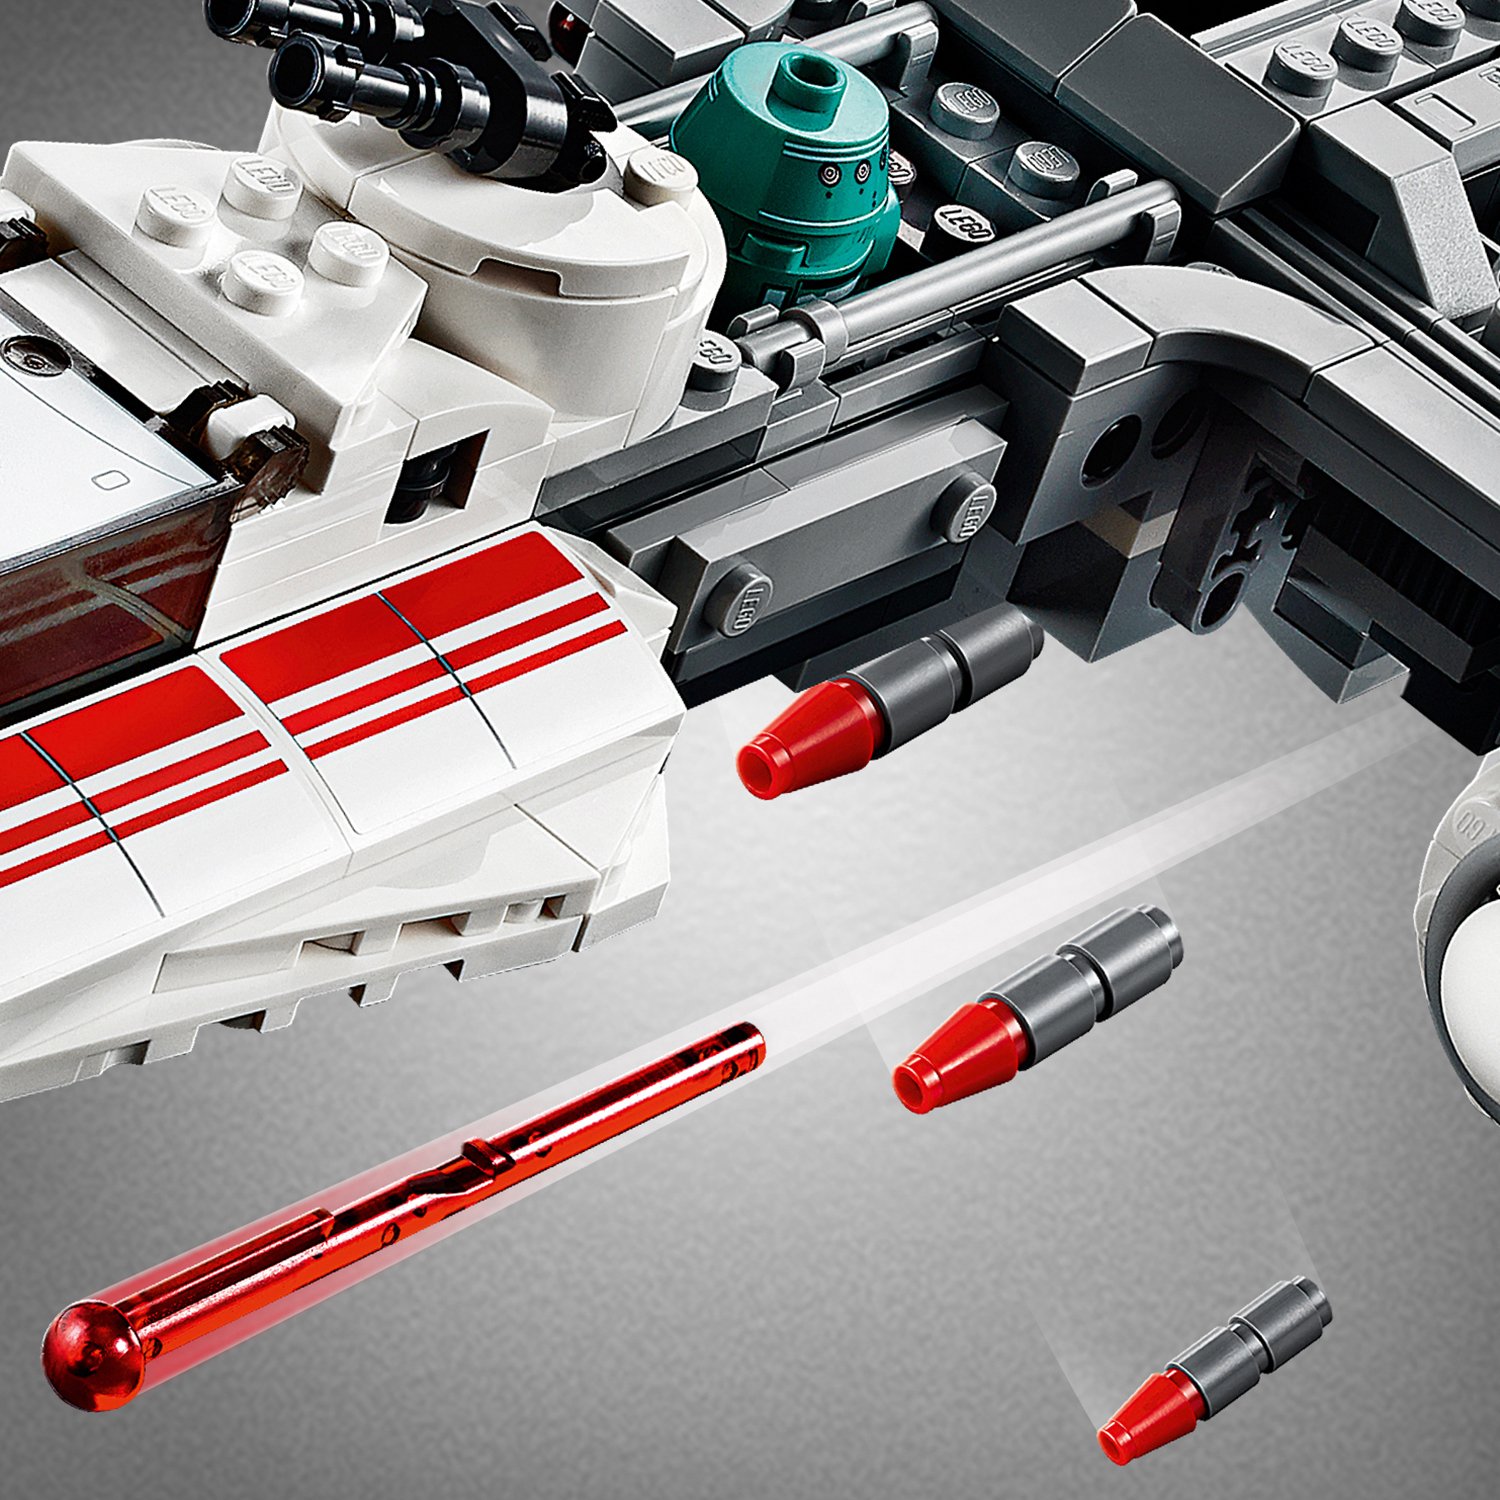 Конструктор Lego Star Wars - Звёздный истребитель Повстанцев типа Y  